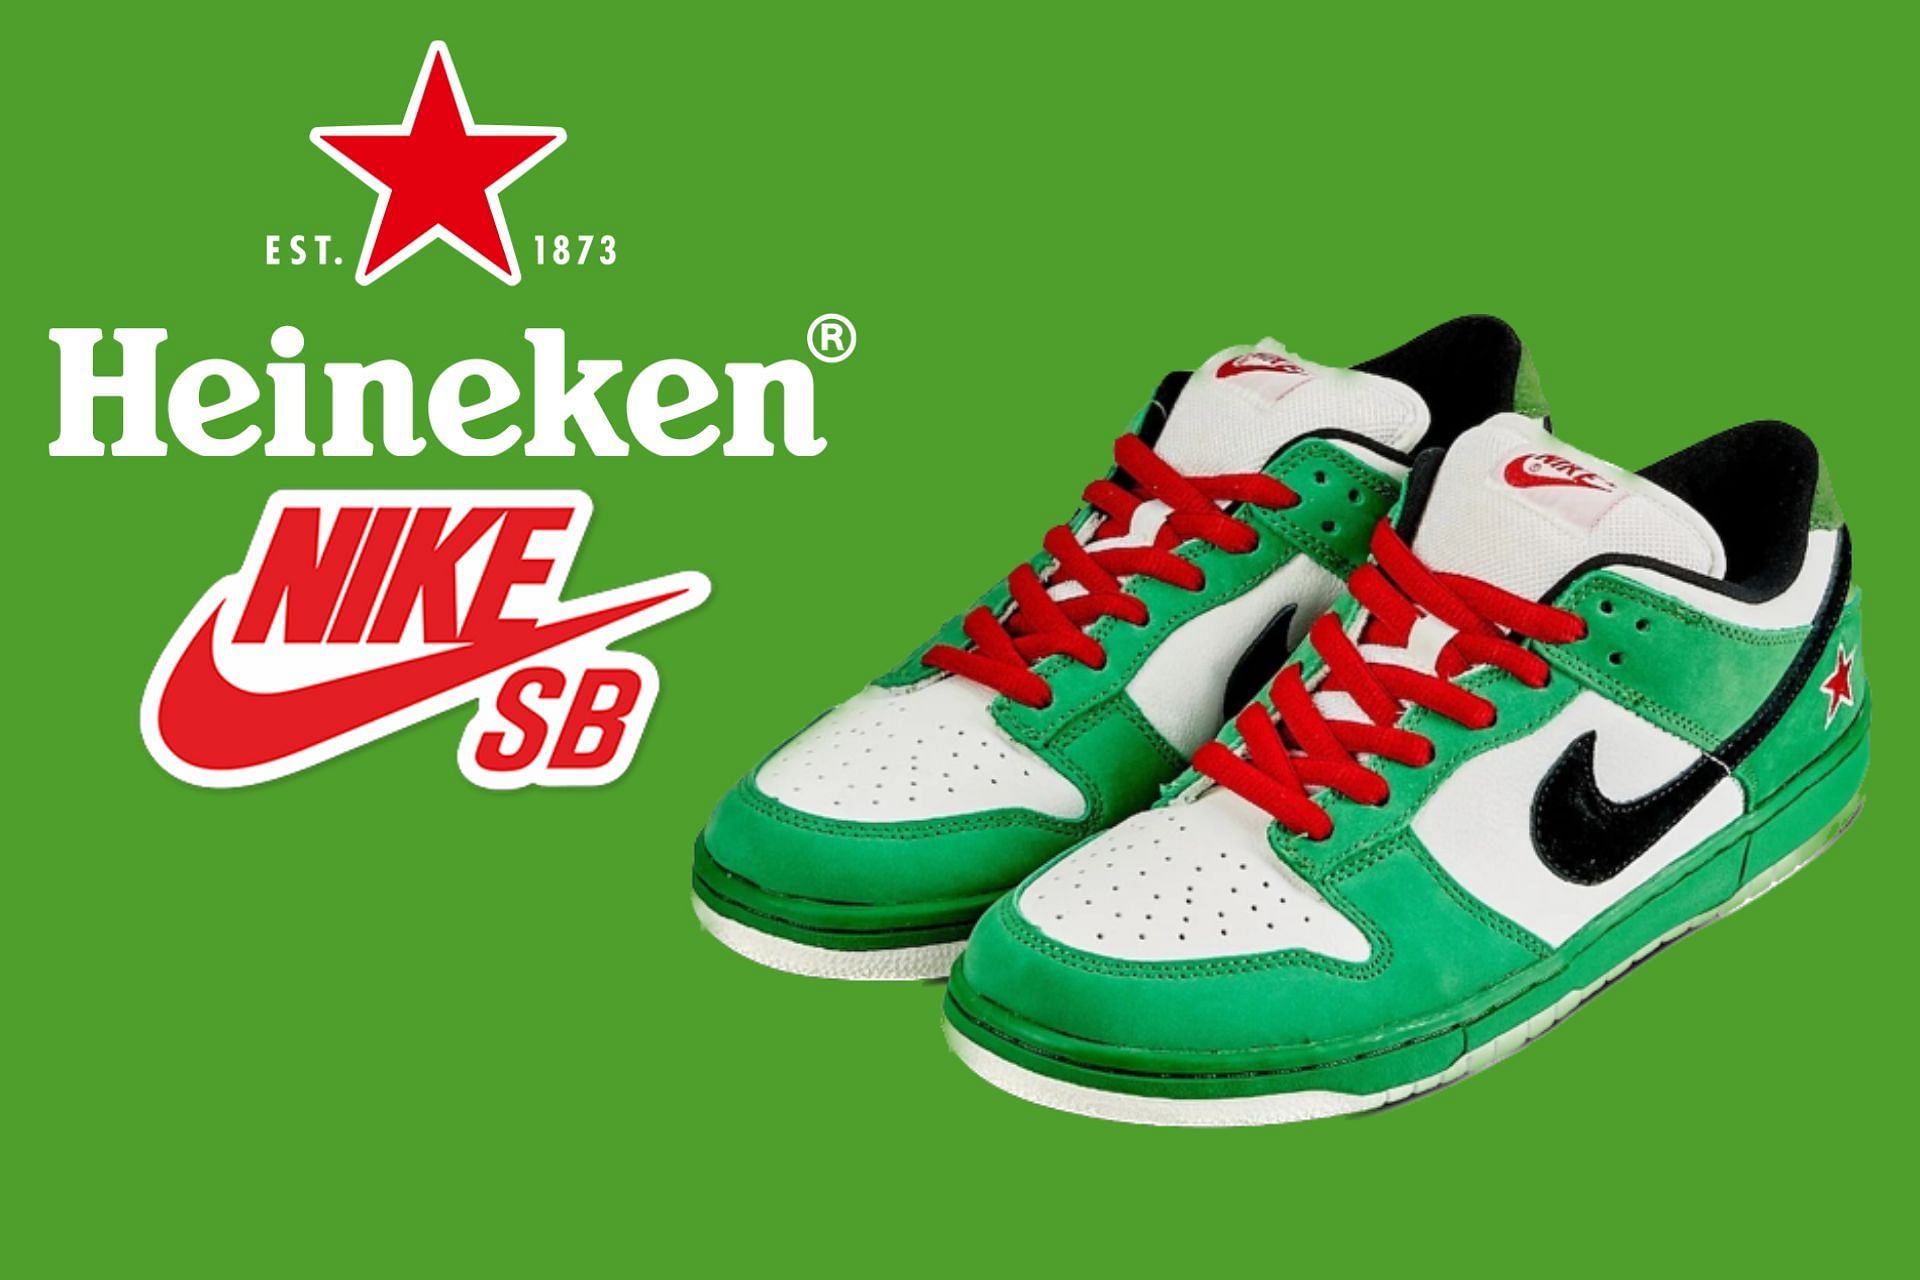 Heineken: SB Dunk “Heineken 2.0” shoes: Everything we know so